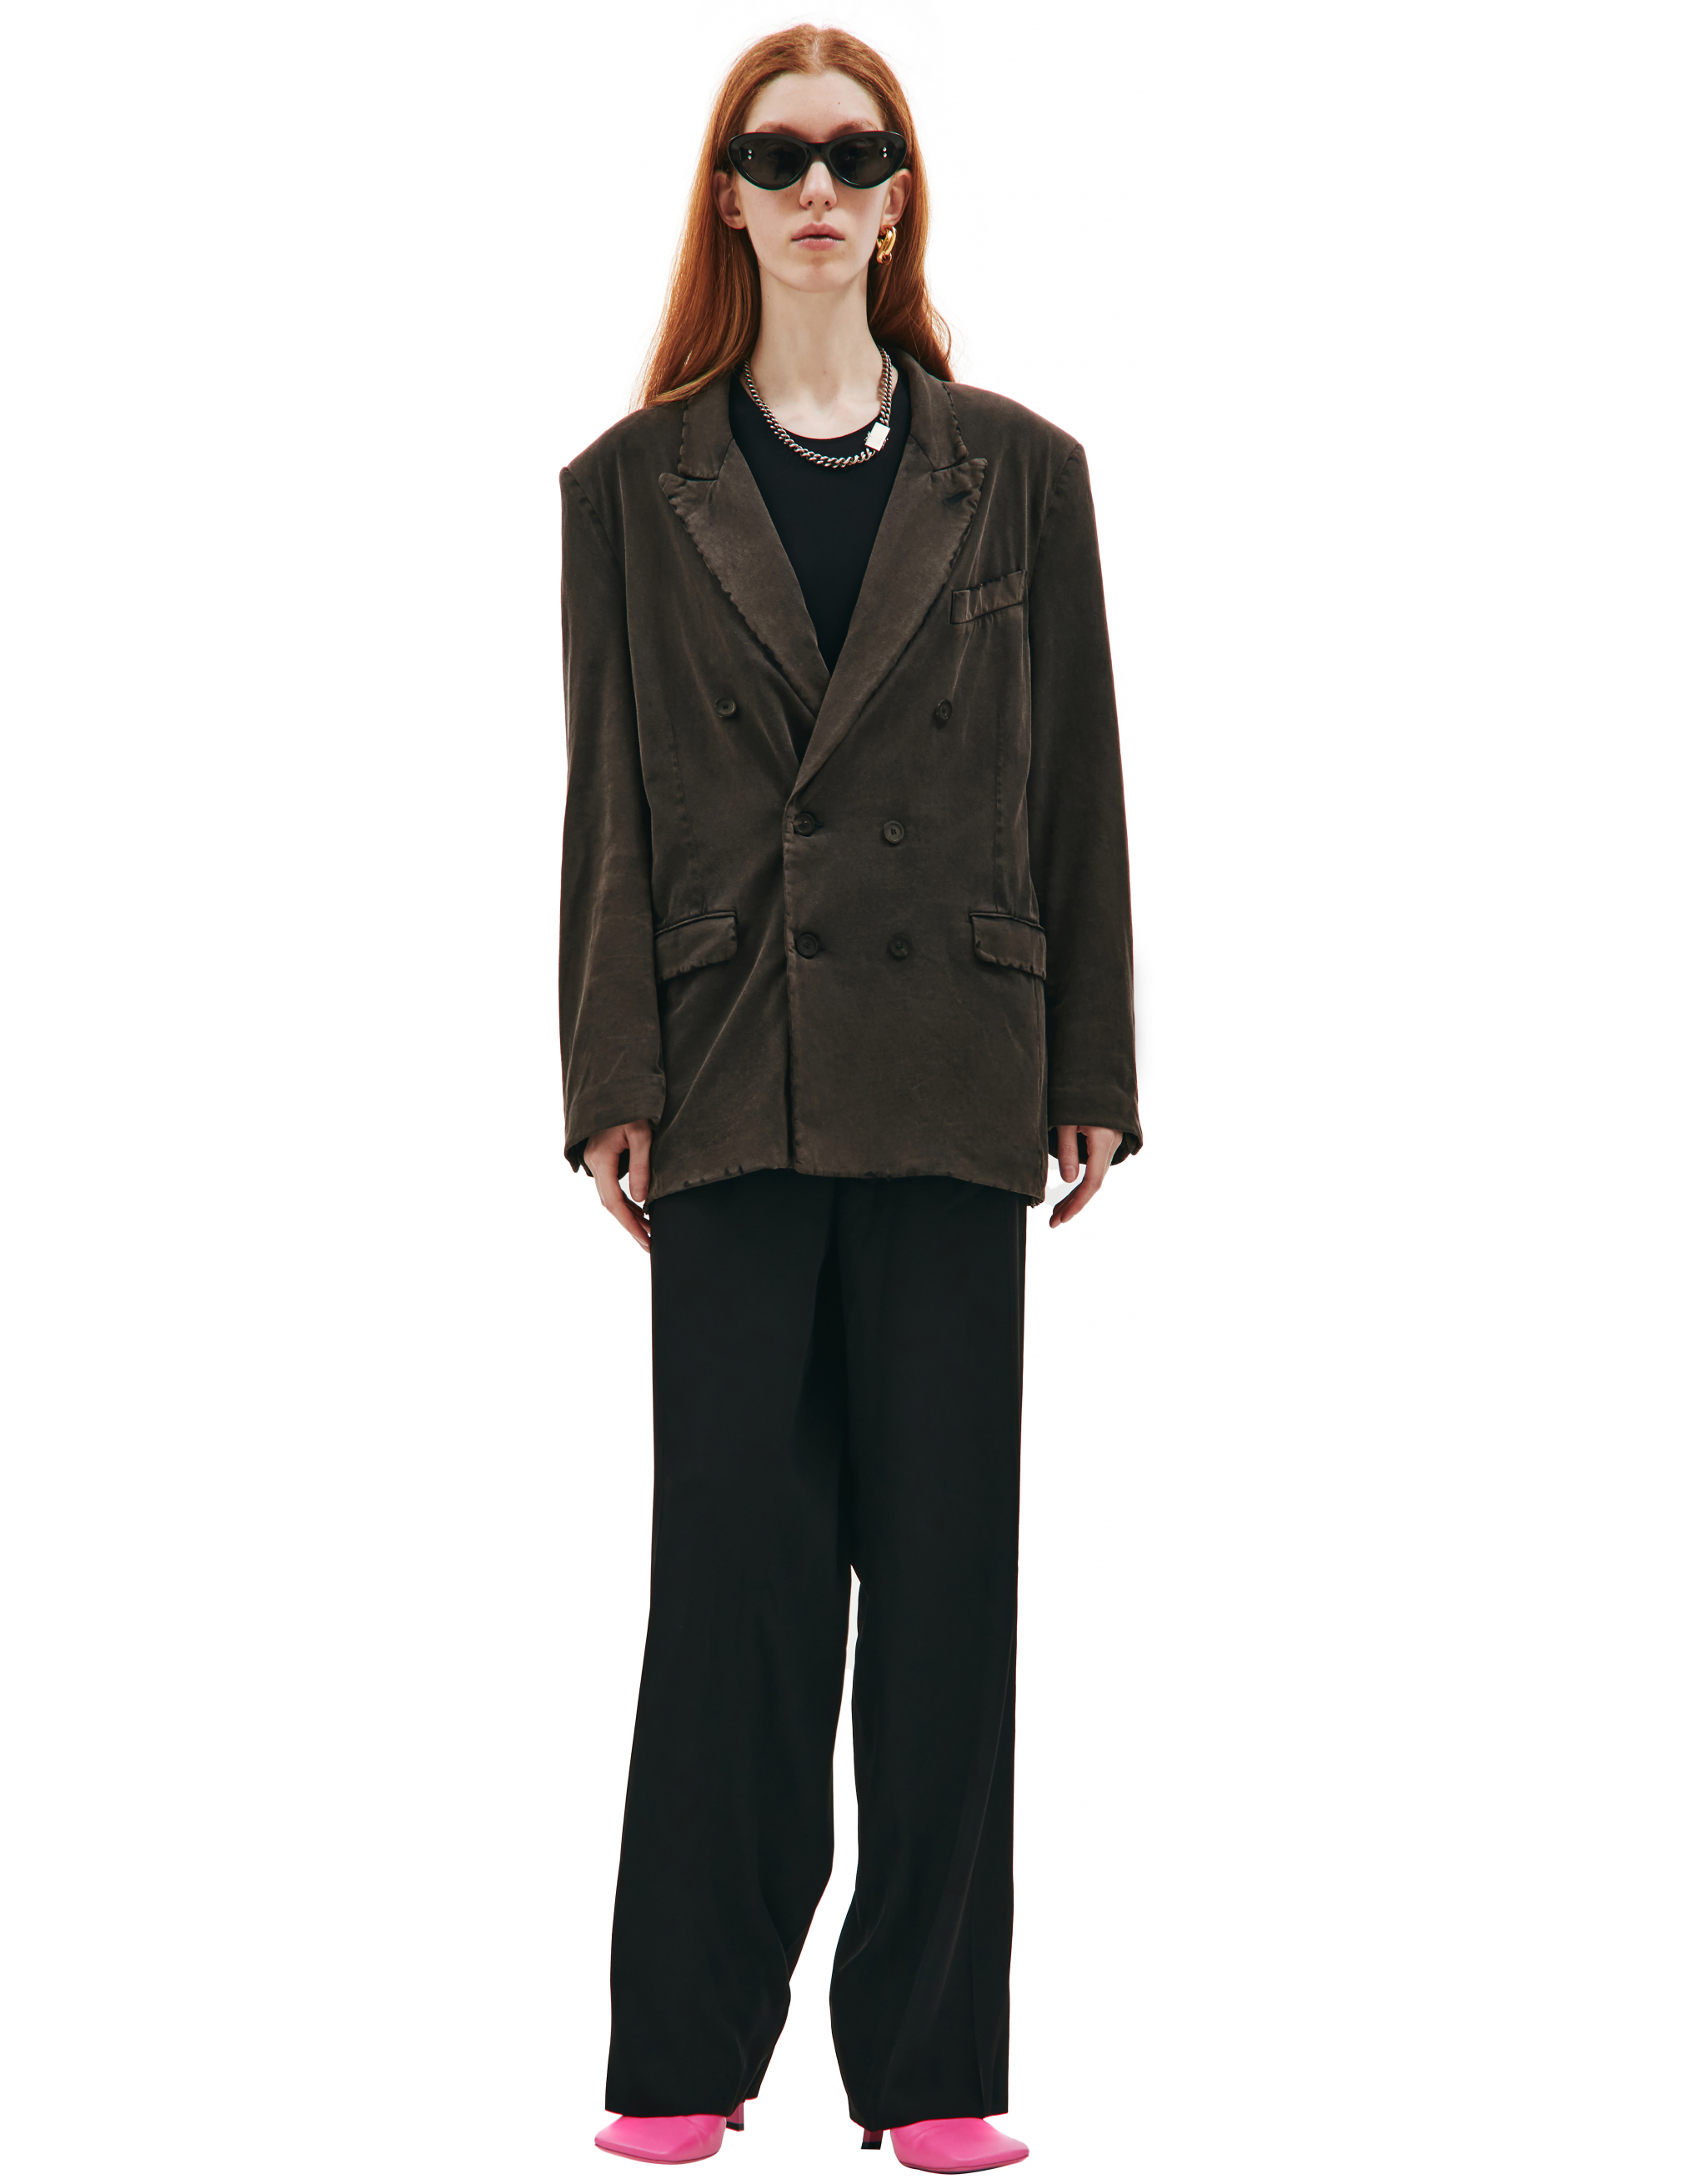 Двубортный пиджак с выстиранным эффектом Balenciaga 662390/TAV04/1000, размер M 662390/TAV04/1000 - фото 1